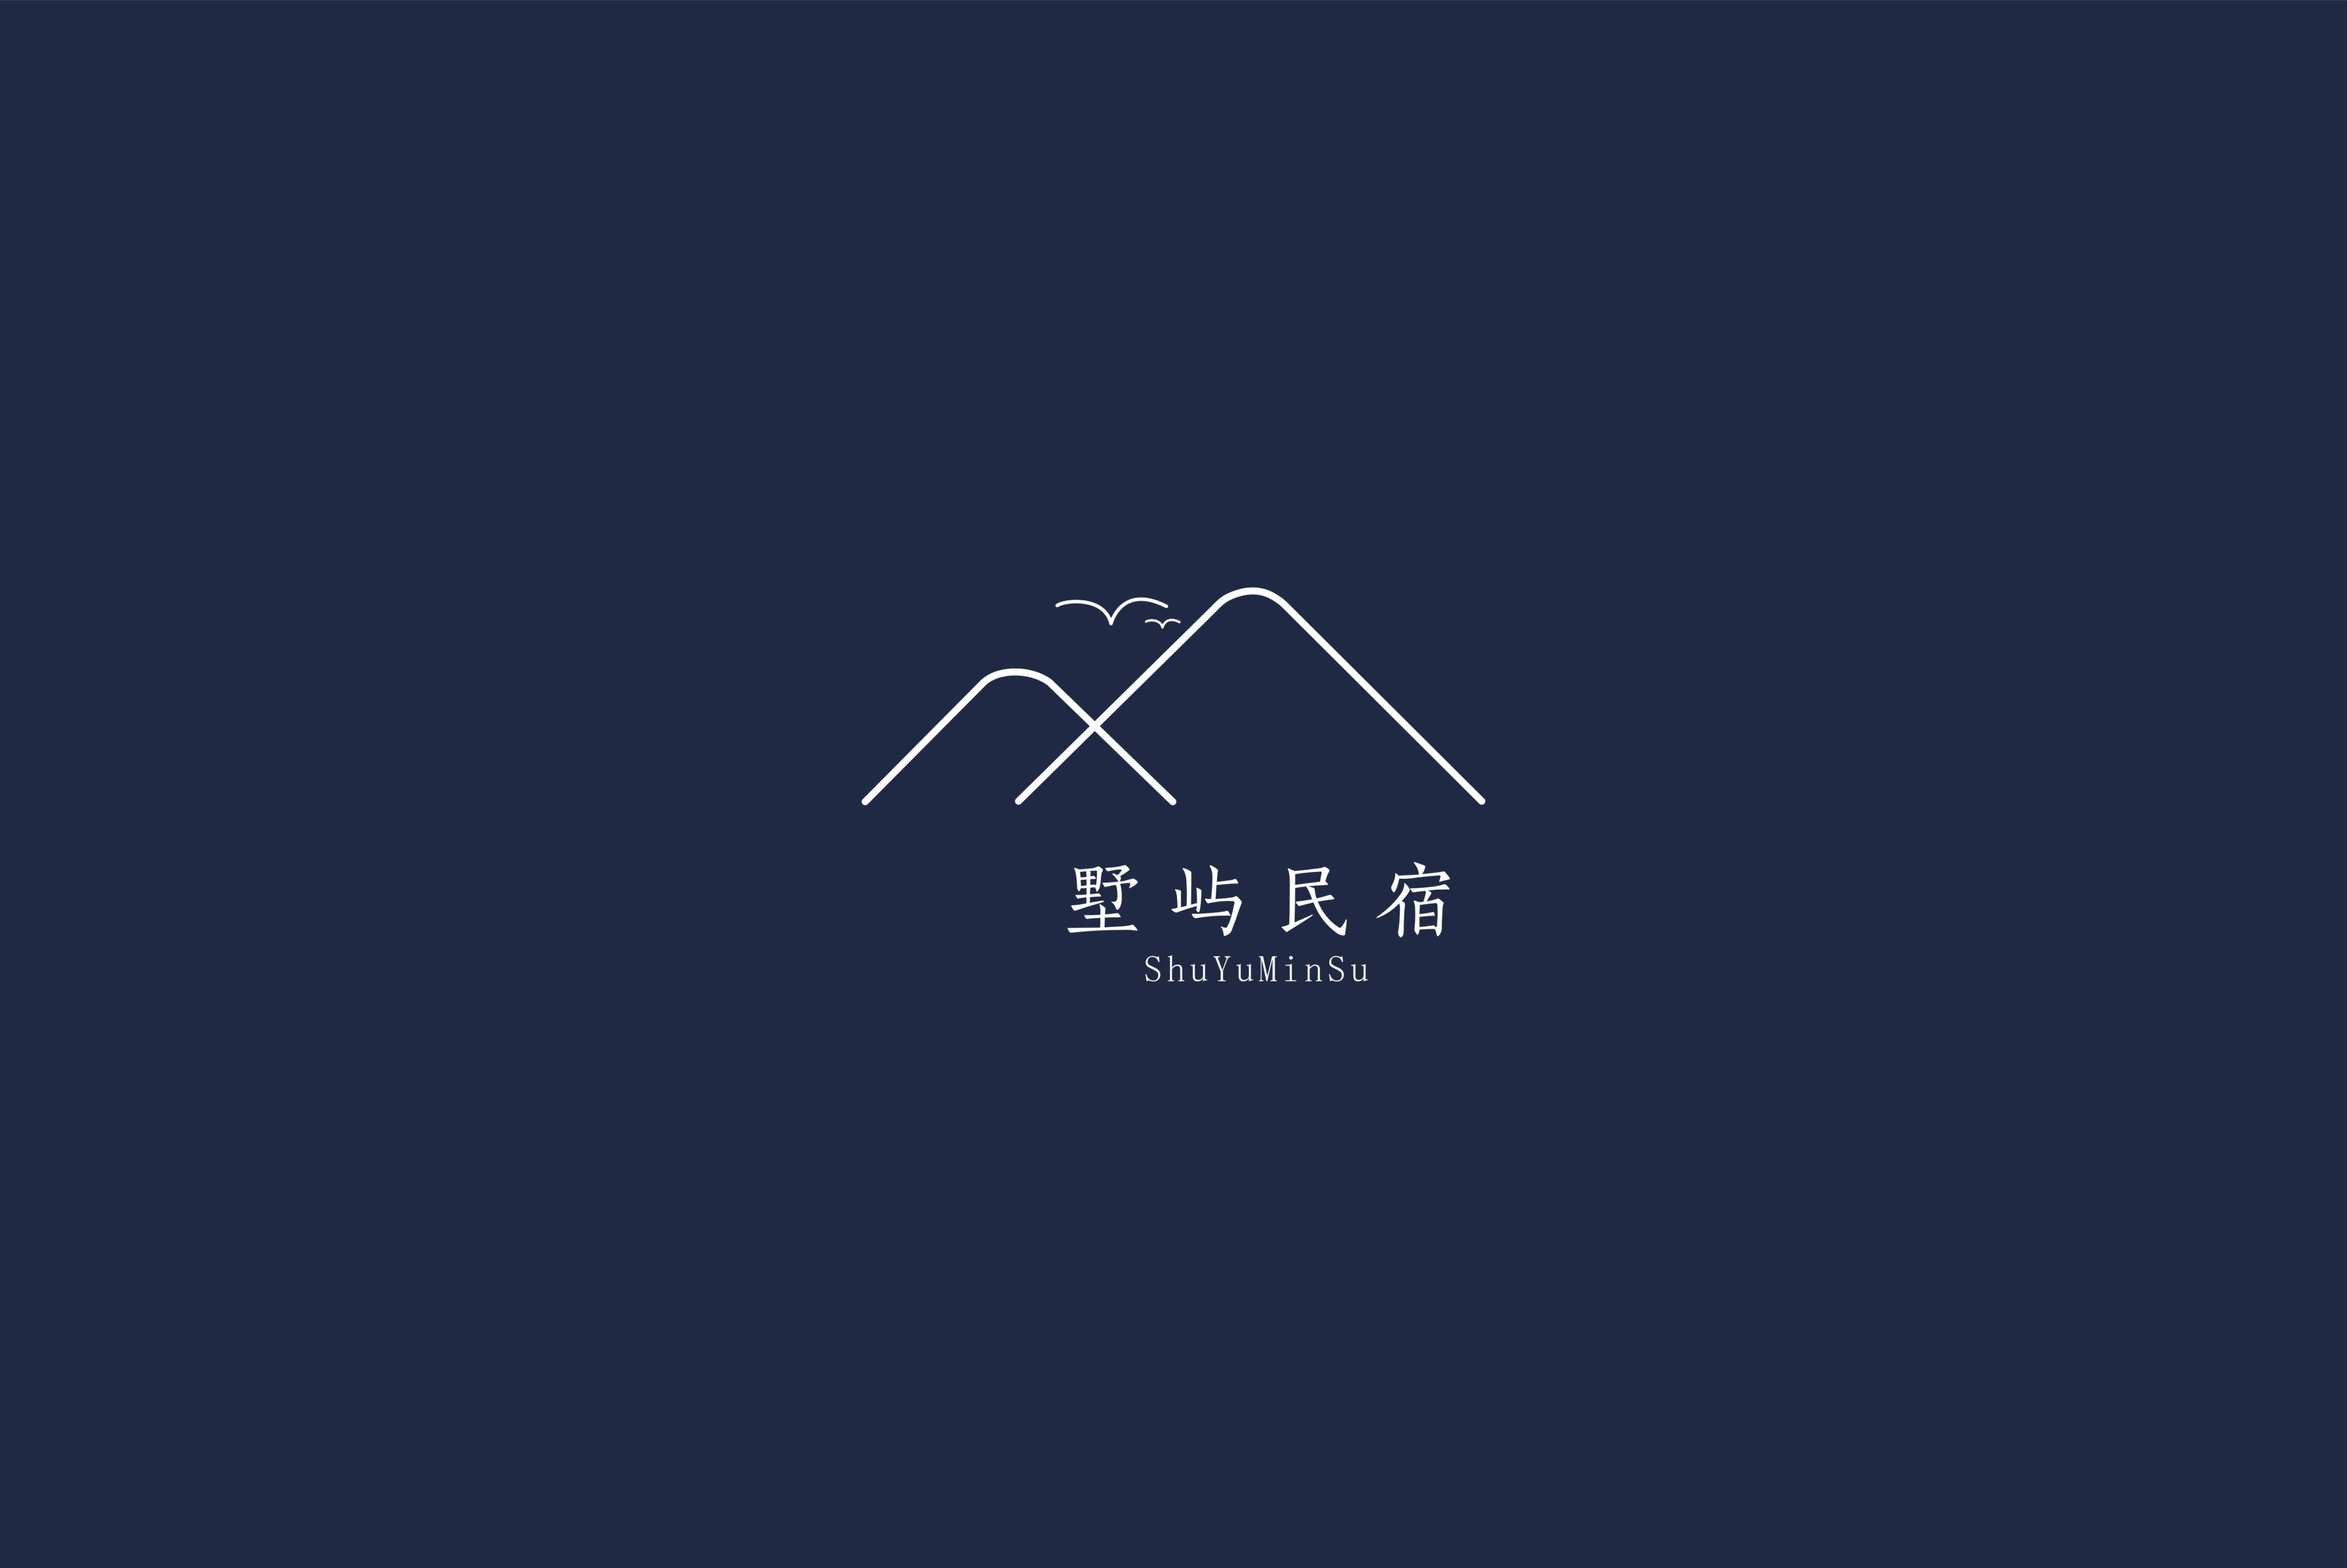 民宿logo设计图片城市图片